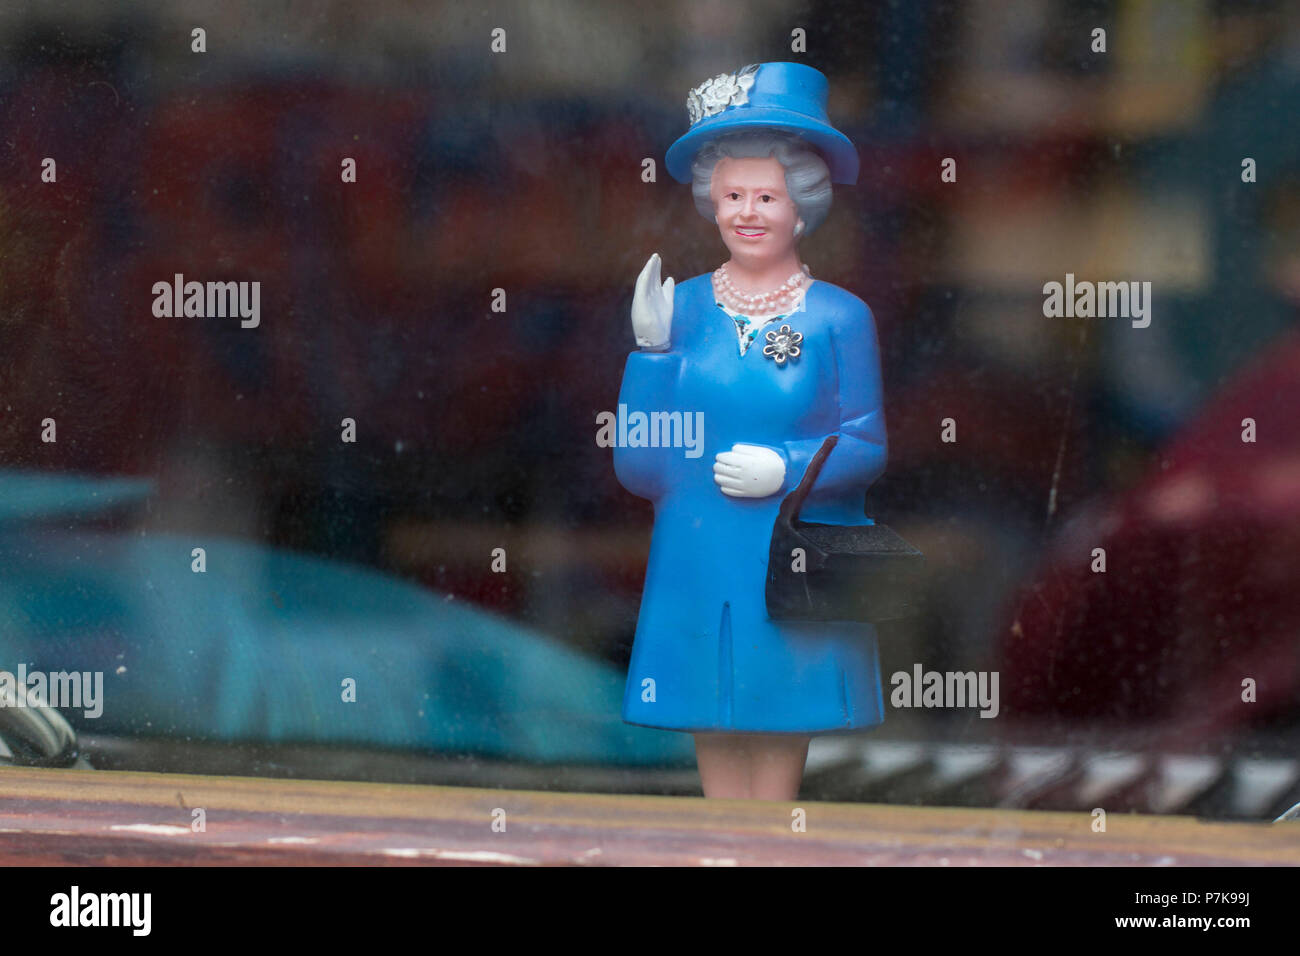 Winkende Monarchie, der englischen Königin als Puppe in einem Schaufenster. Stockfoto